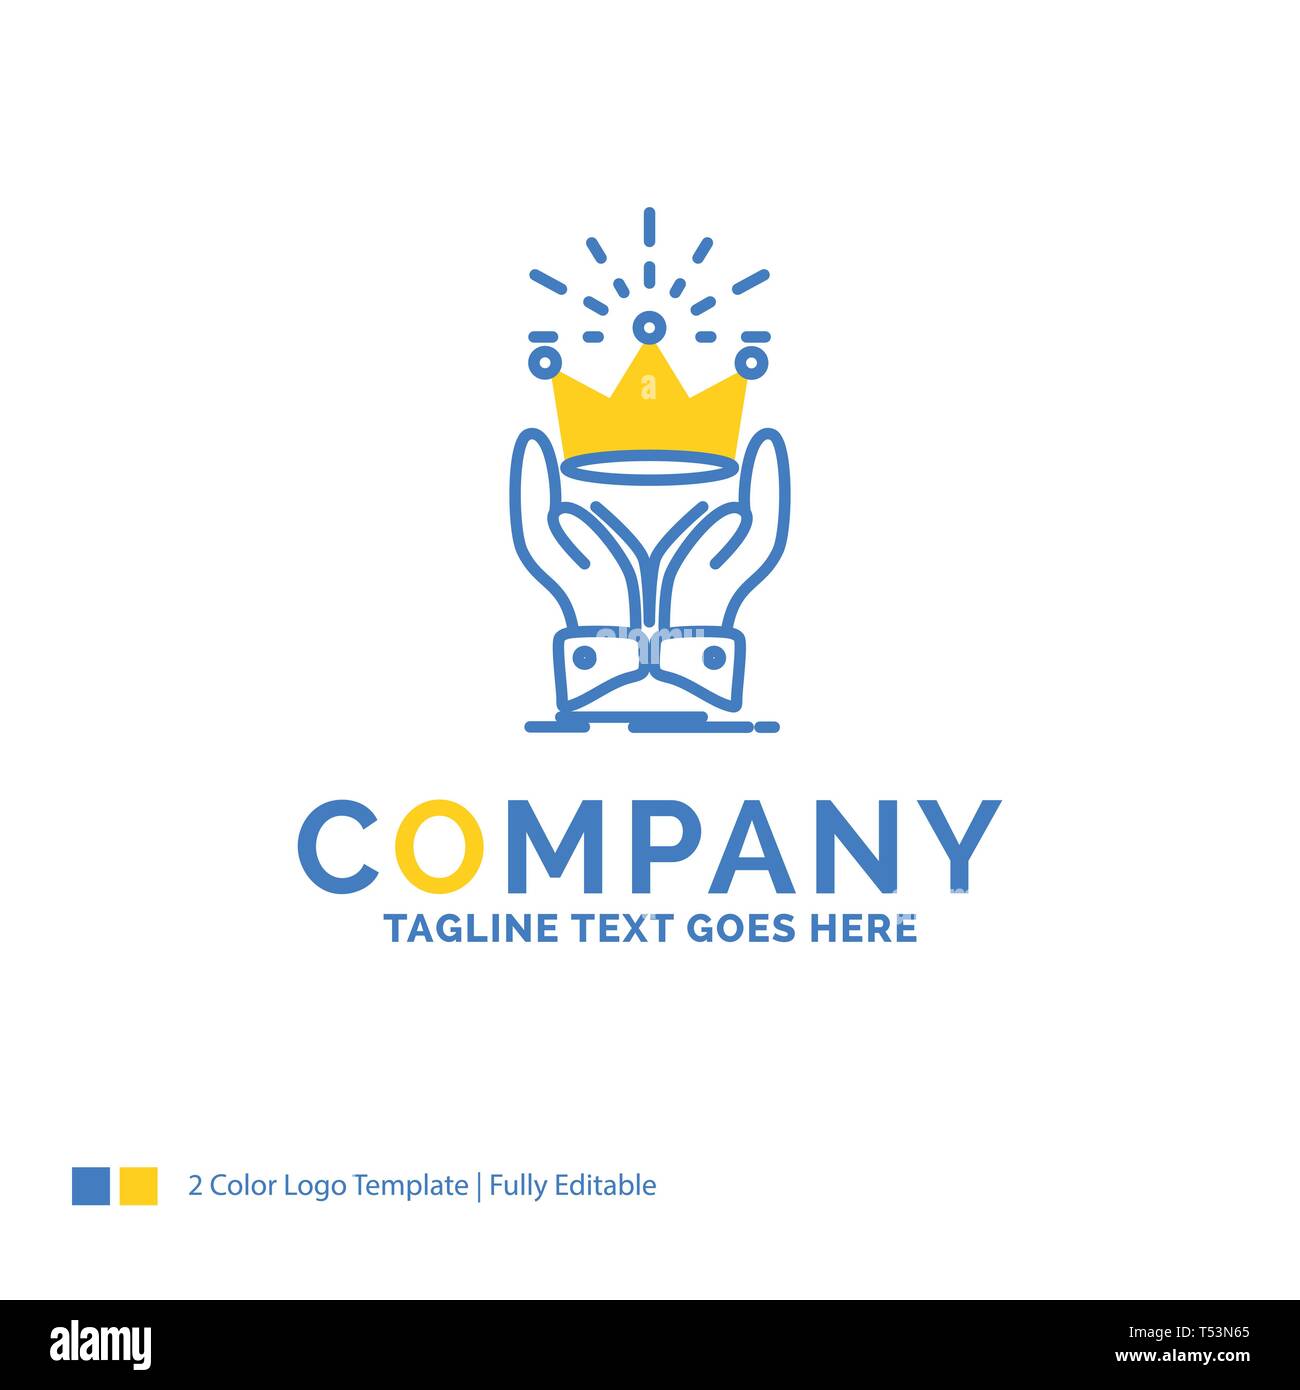 Corona, onore, re, mercato, Royal Blue GIALLO Logo aziendale modello. Creative Design Template posto per slogan. Illustrazione Vettoriale